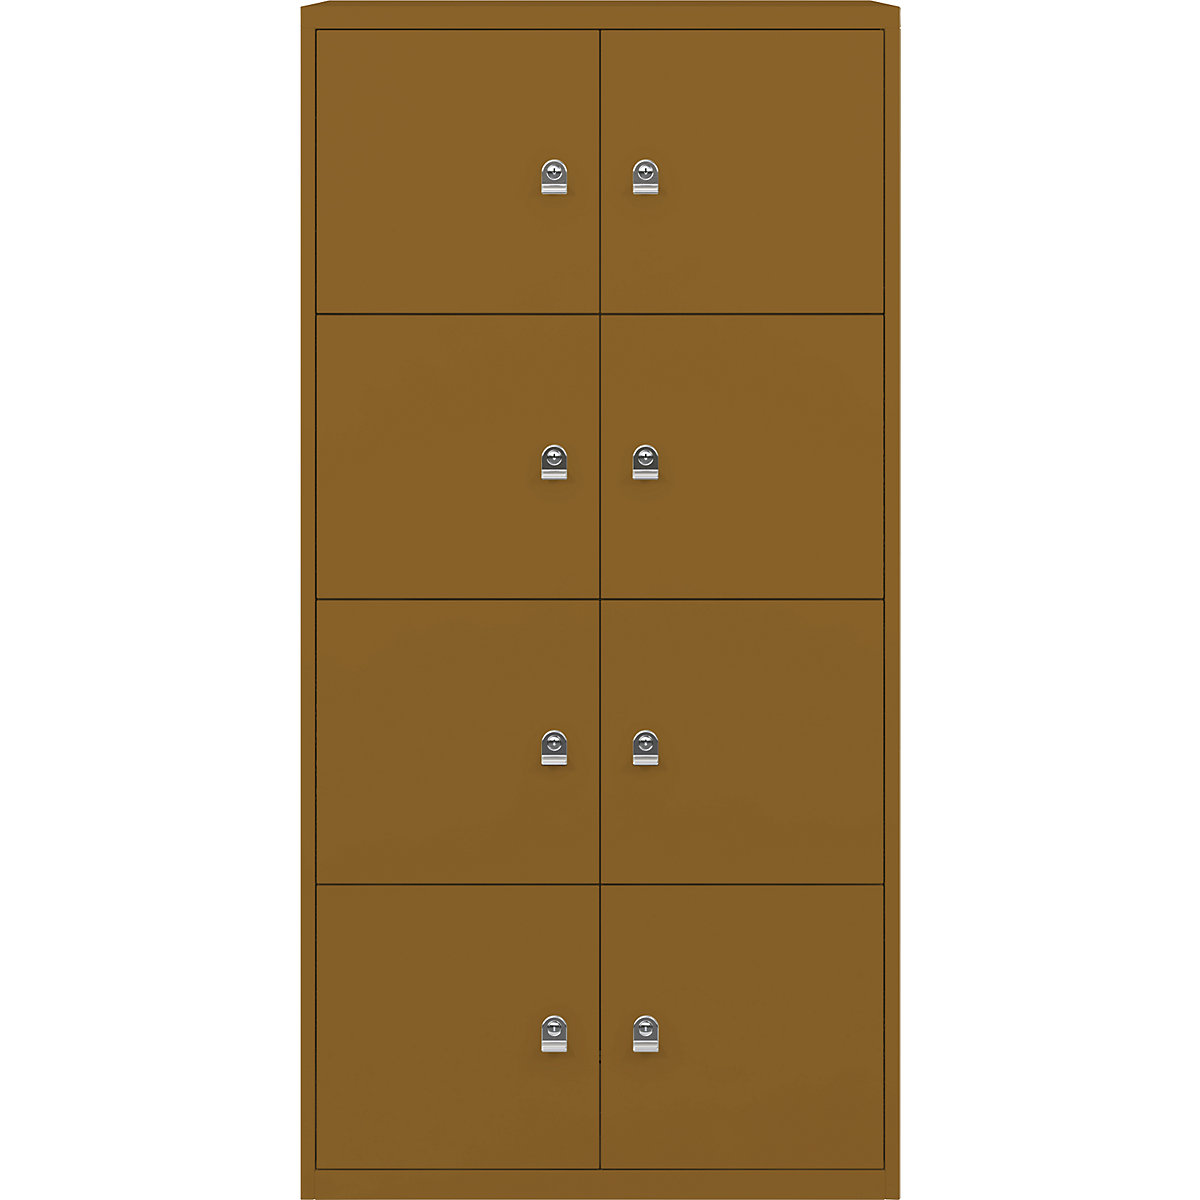 Armoire à casiers LateralFile™ – BISLEY, 8 casiers hauteur 375 mm, dijon-20